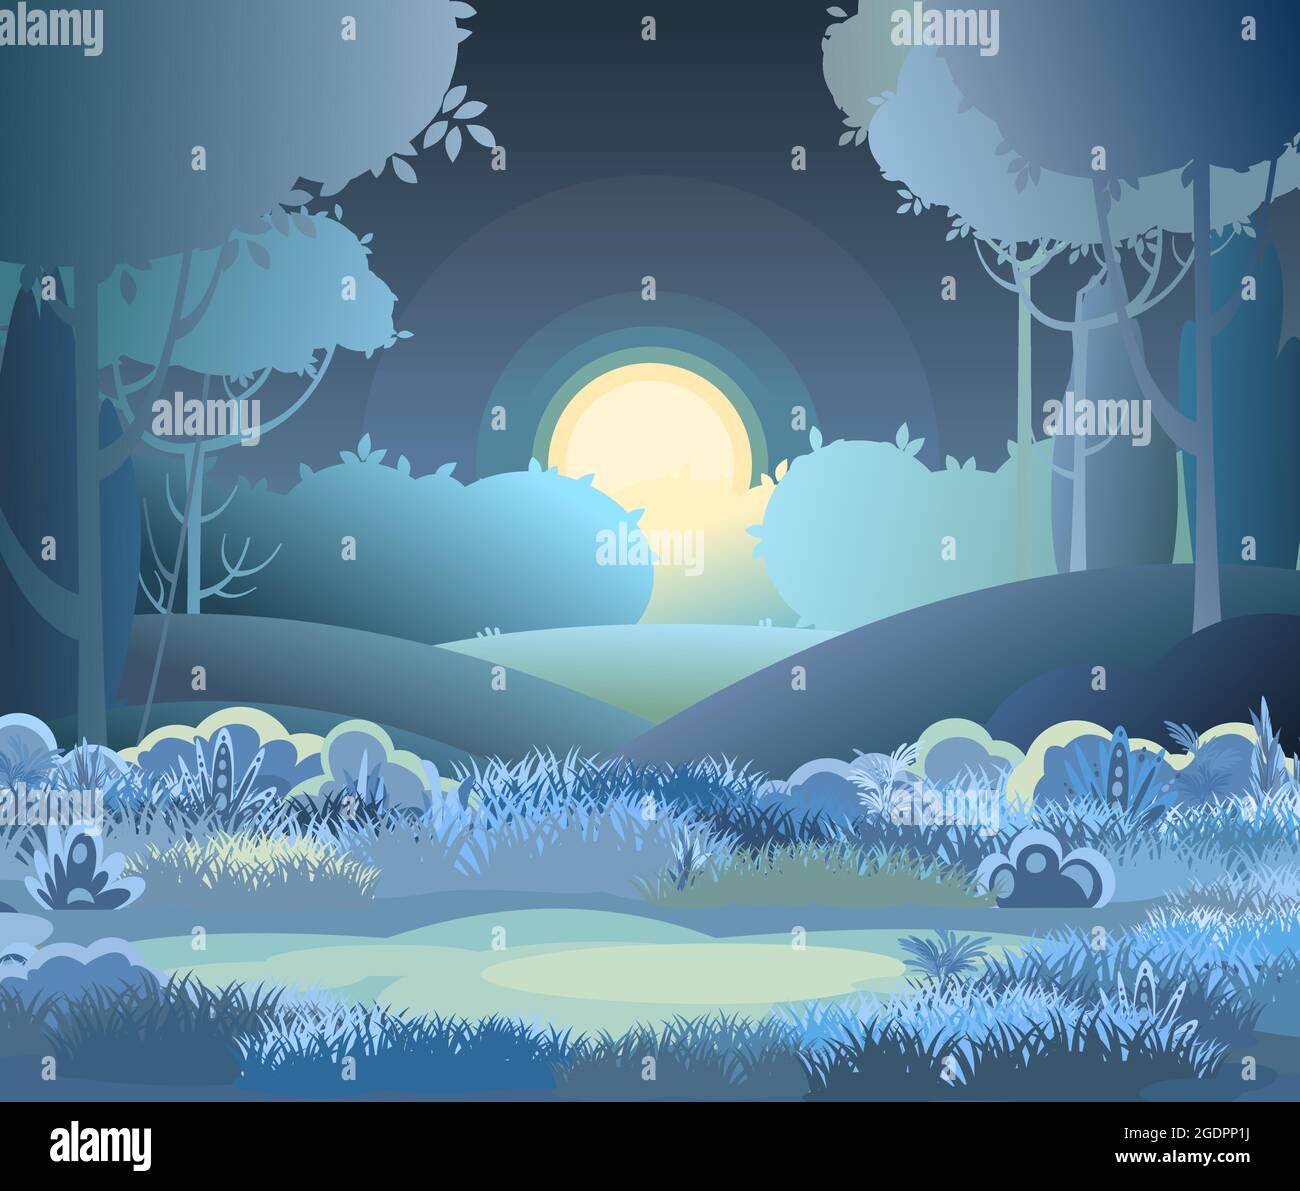 Nacht schöne ländliche Landschaft. Cartoon-Stil. Hügel Gras und dunkle Bäume. Mond und Mondlicht. Saftige Wiesen. Entfernt. Flache Abbildung Stock Vektor